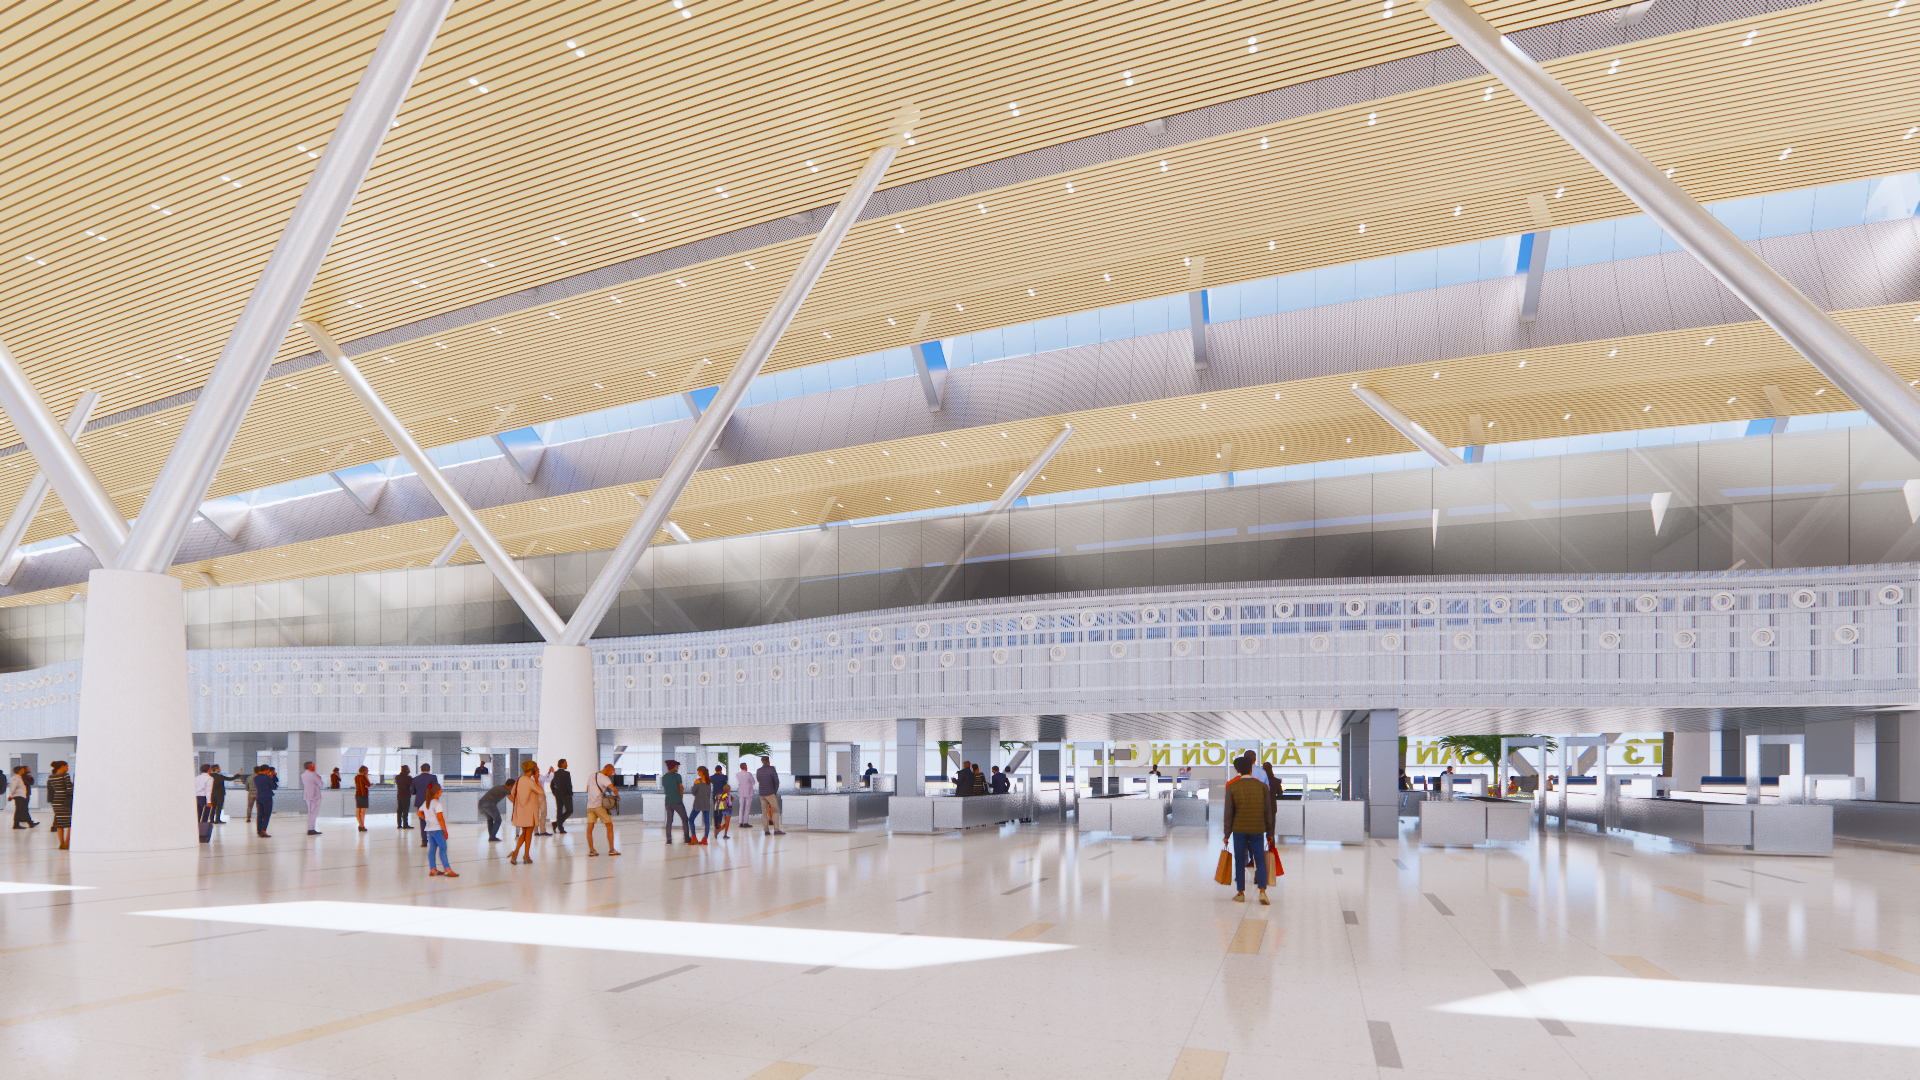 Hé lộ thiết kế nhà ga T3 sân bay Tân Sơn Nhất có gì đặc biệt? - Ảnh 6.